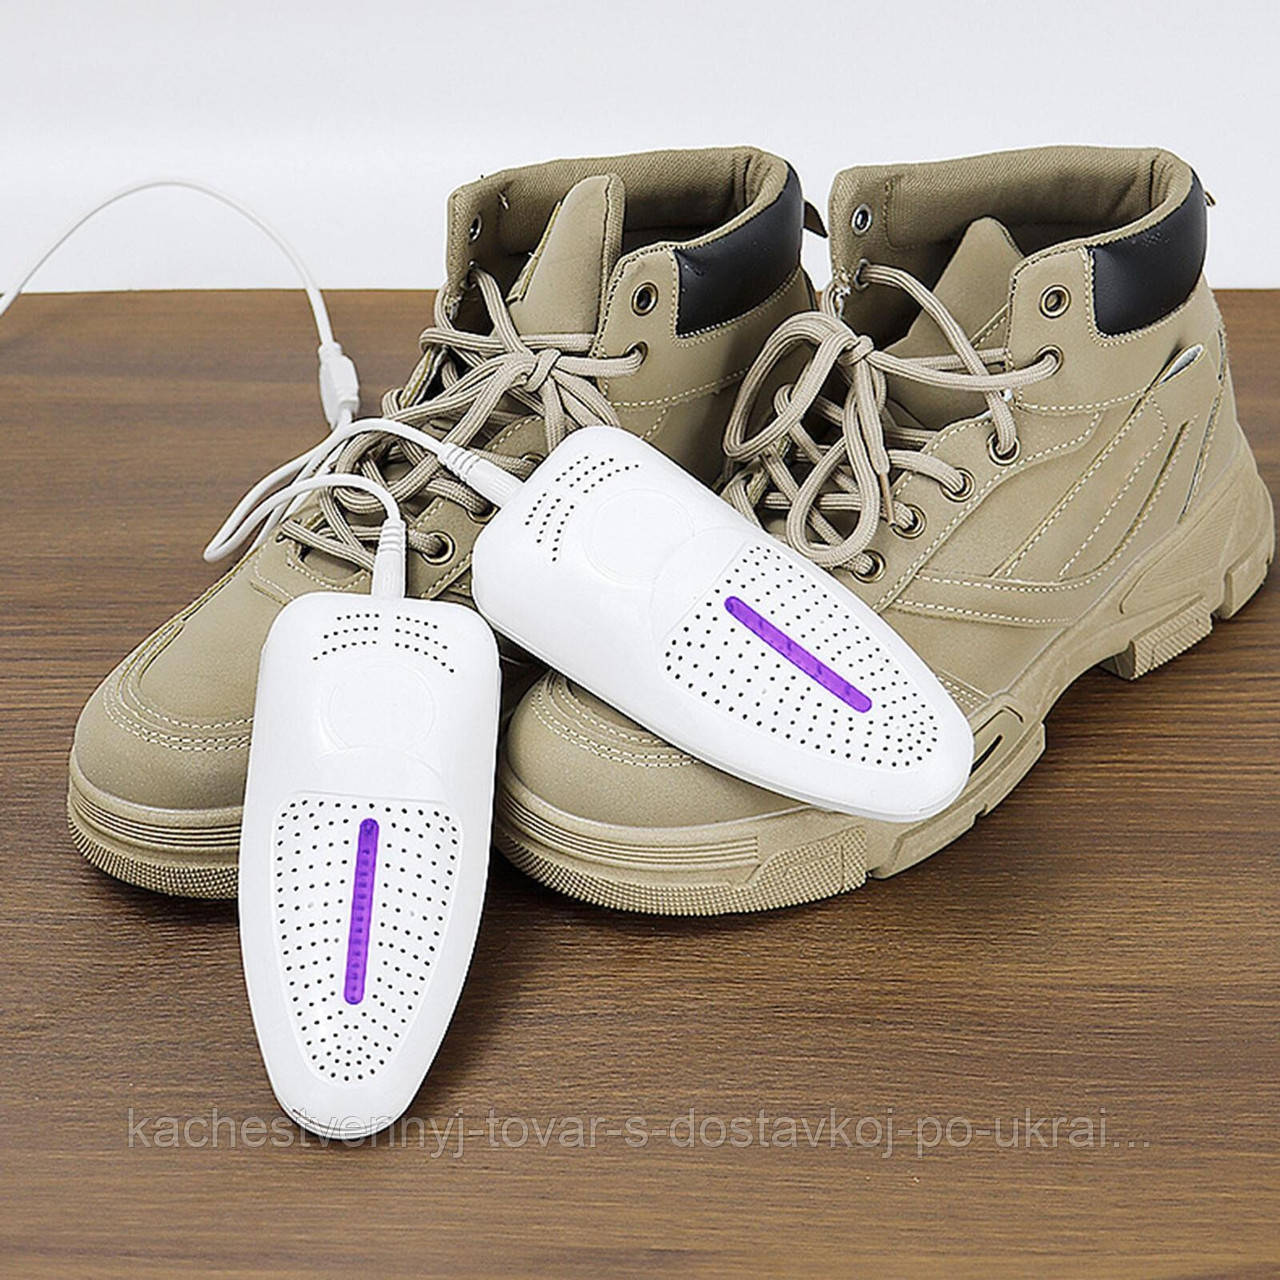 Сушарка для взуття електрична Shoe Dryer R8 10W USB сушка для взуття - сушарка для черевиків, кросівок